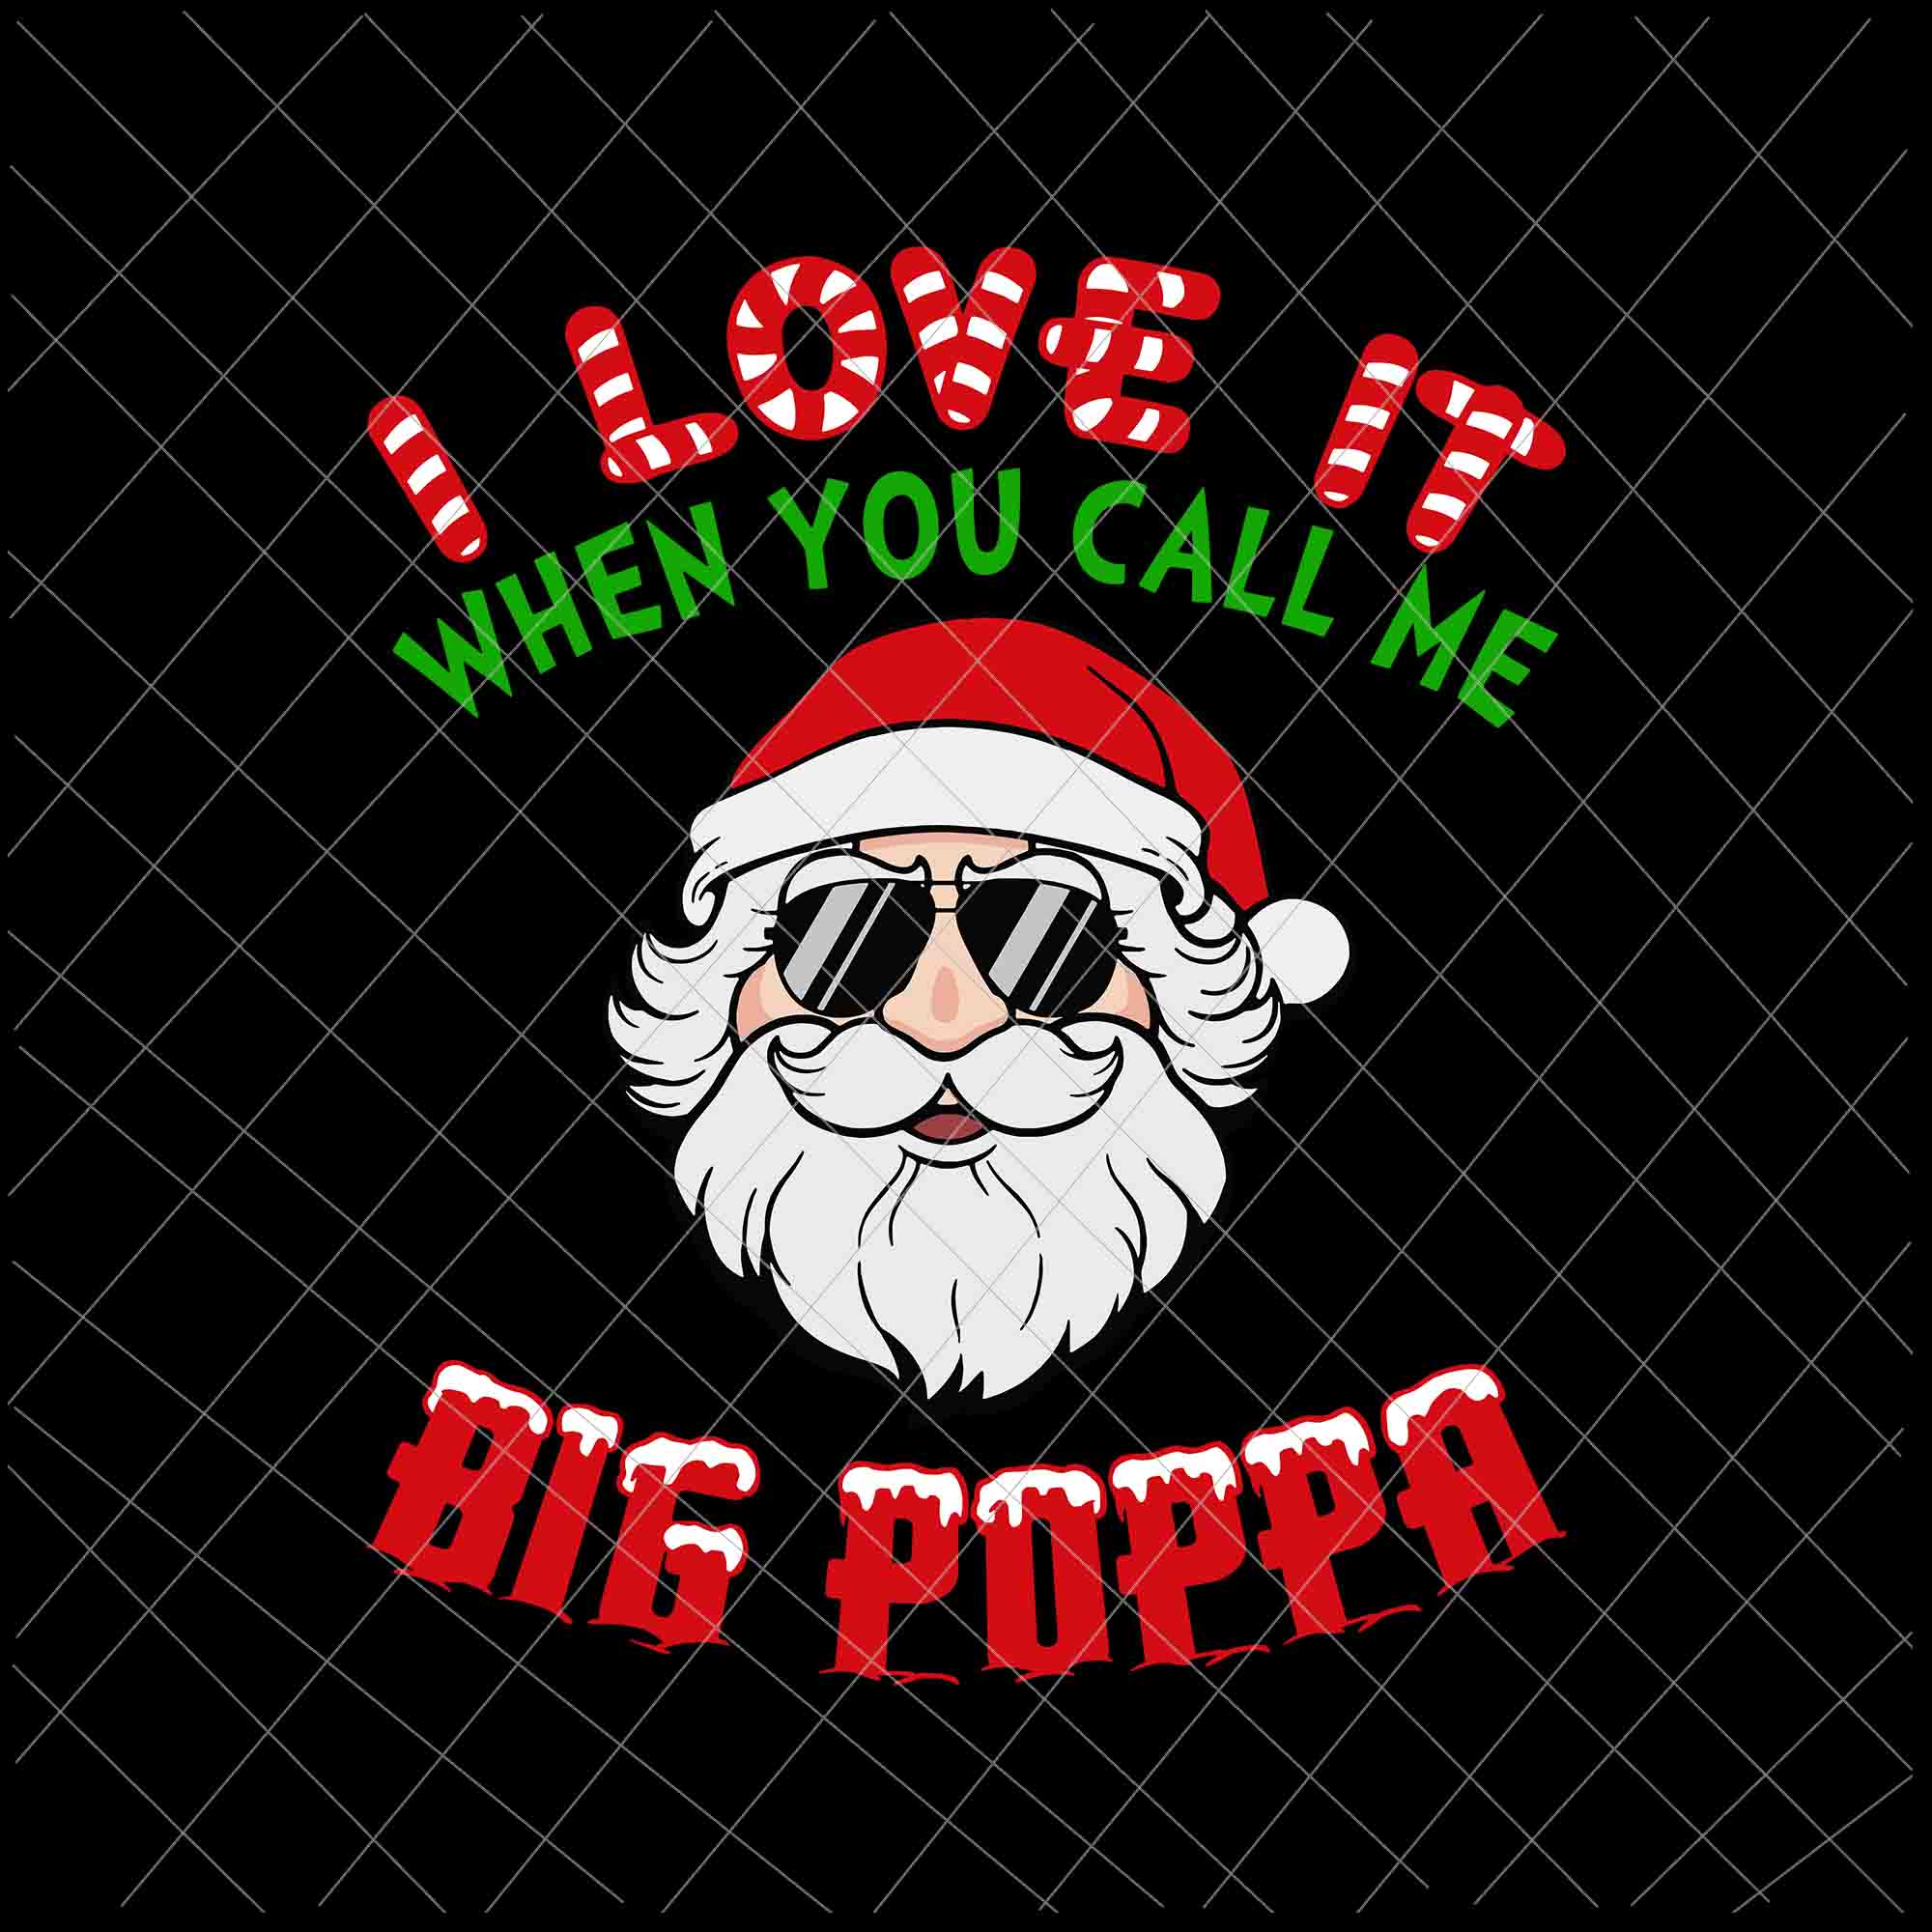 I Love It When You Call Me Big Poppa Svg, Christmas Santa Svg, Face Santa Claus Svg, Santa Quote Svg